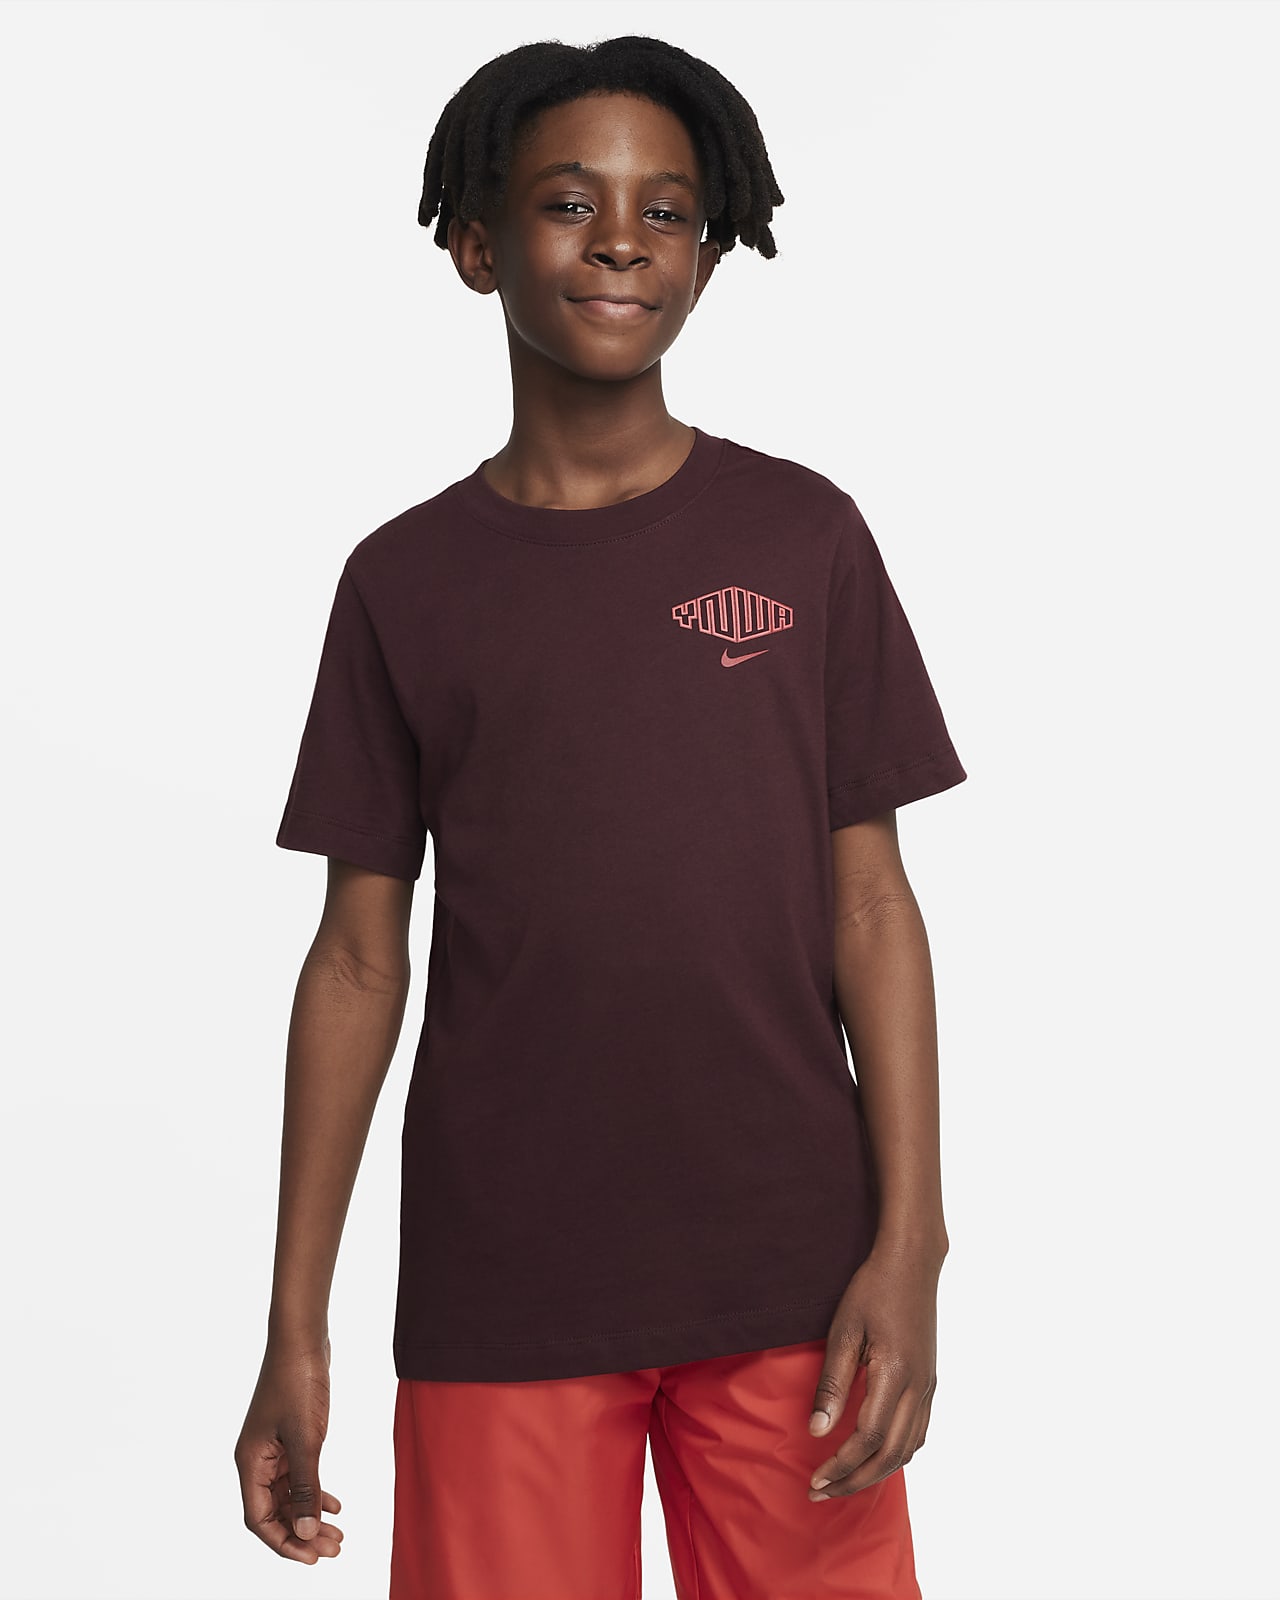 plaag Misverstand Ongeschikt Liverpool FC Big Kids' Soccer T-Shirt. Nike.com